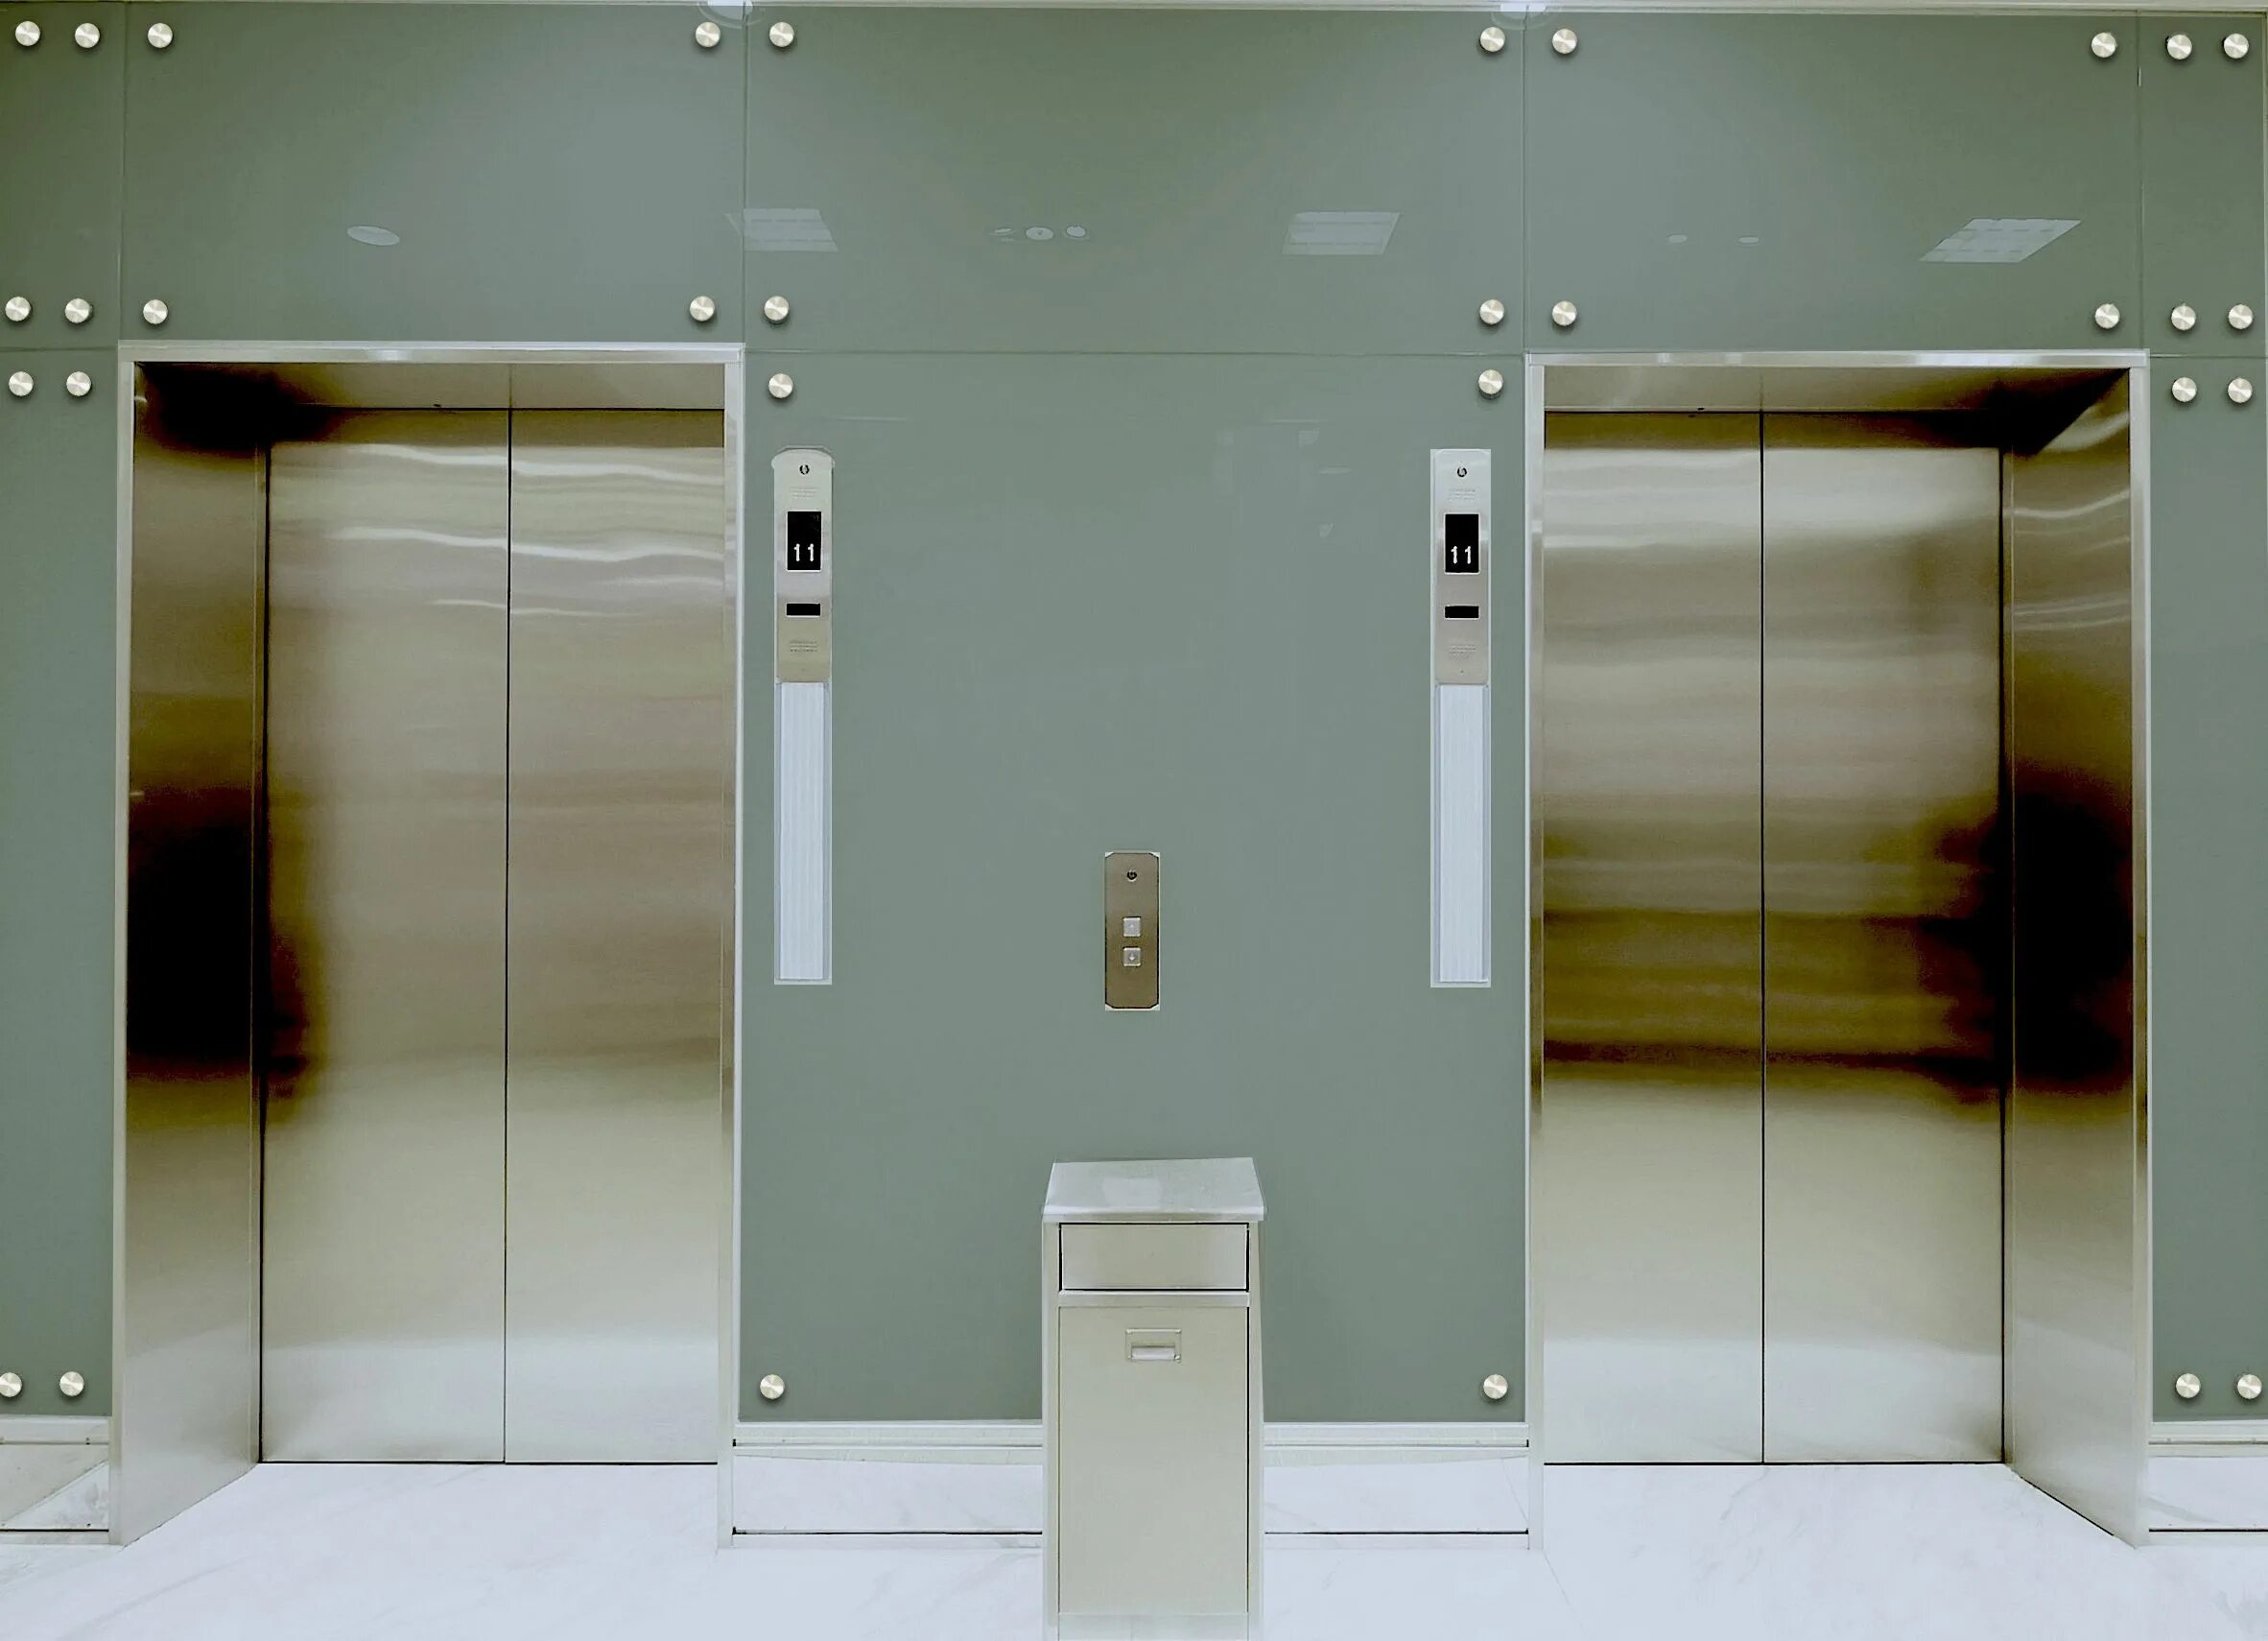 Три вертикальный лифта. Лифты ВИТЧЕЛ. Лифт Sanyo syx1503. Аполло 11 лифт. Лифт ВИТЧЕЛ кабина.